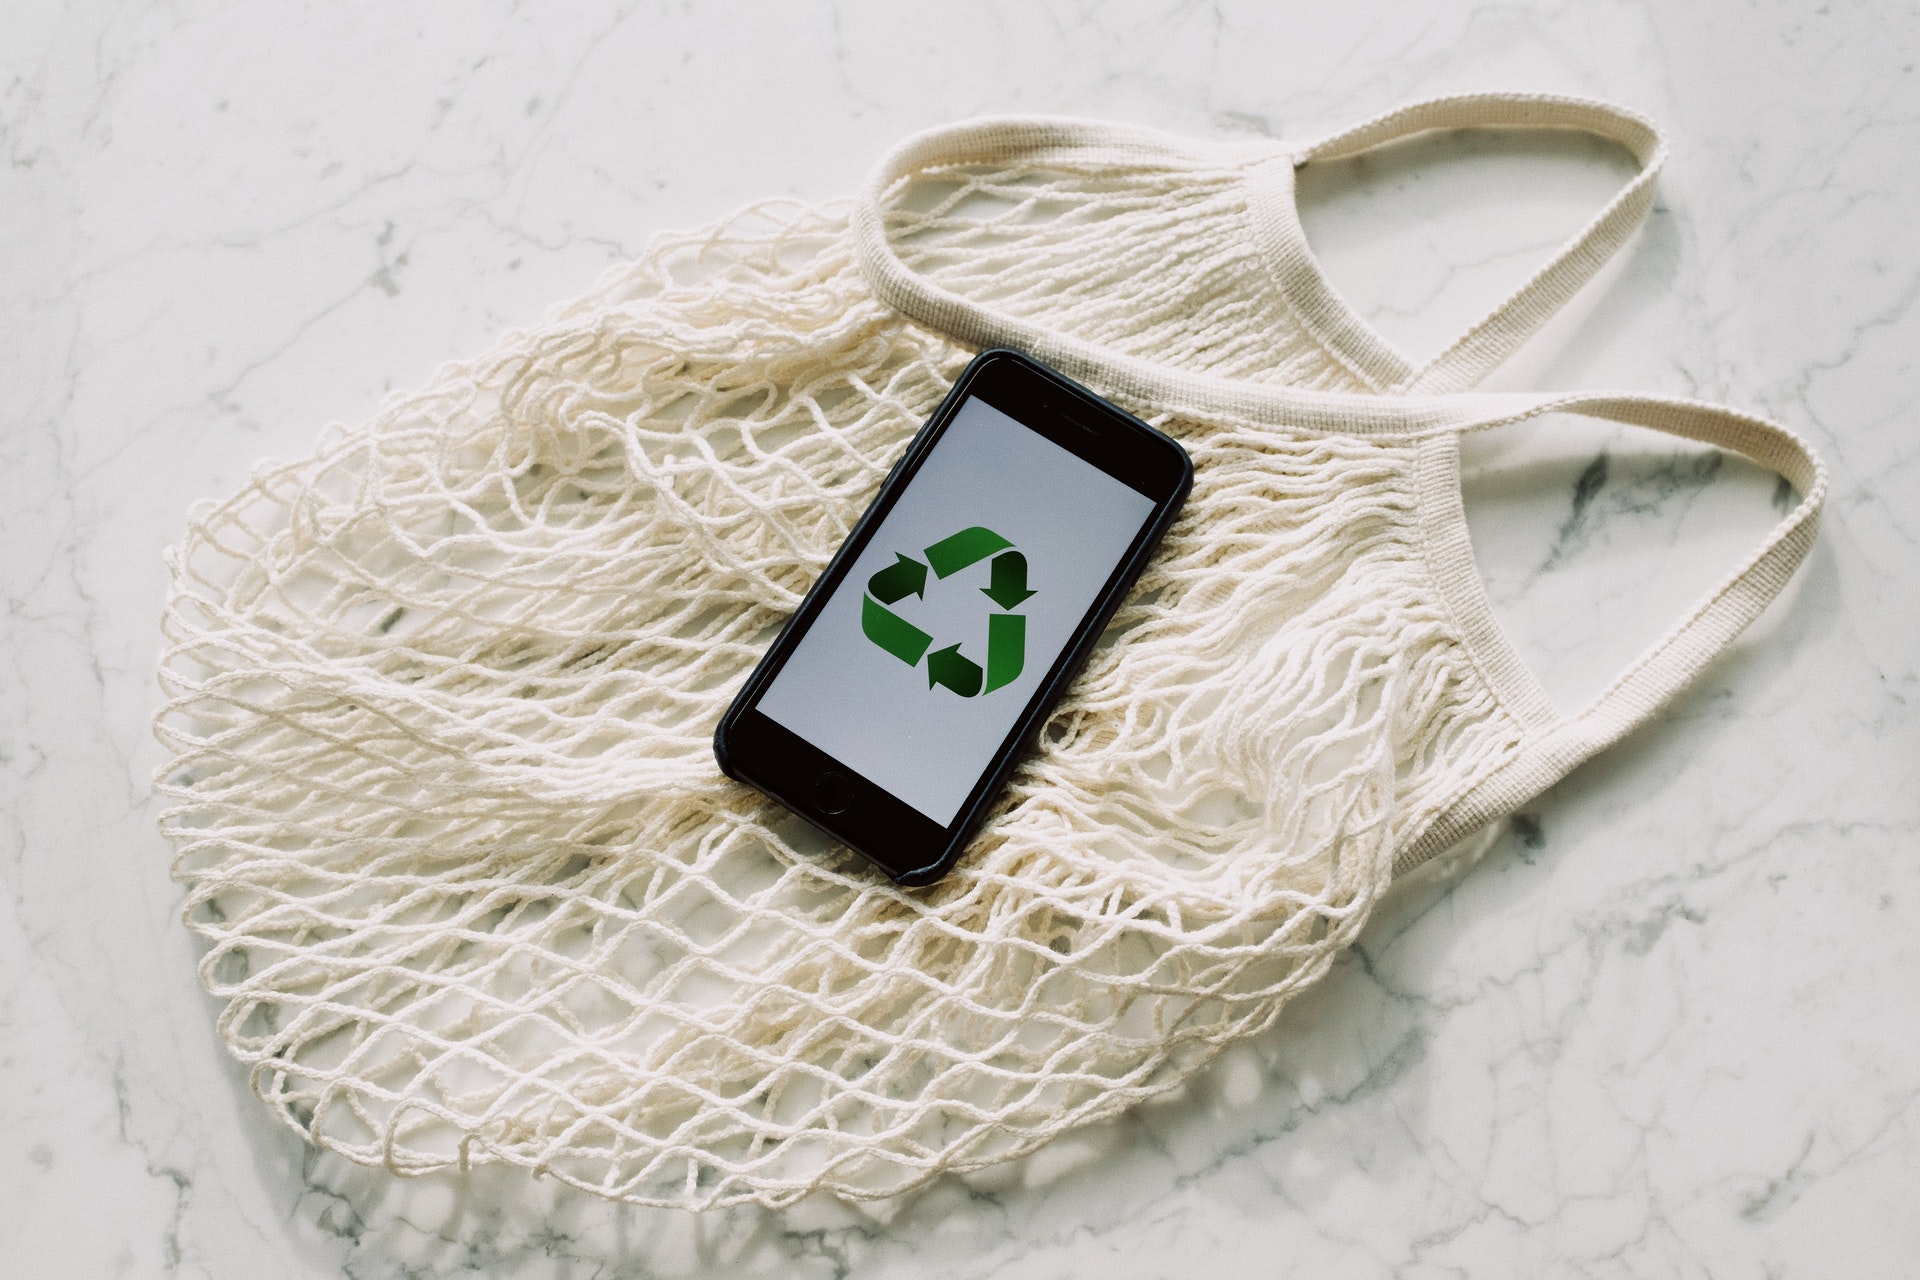 Zdjęcie wielorazowej siatki i leżącego na niej telefonu z symbolem recyklingu na ekranie